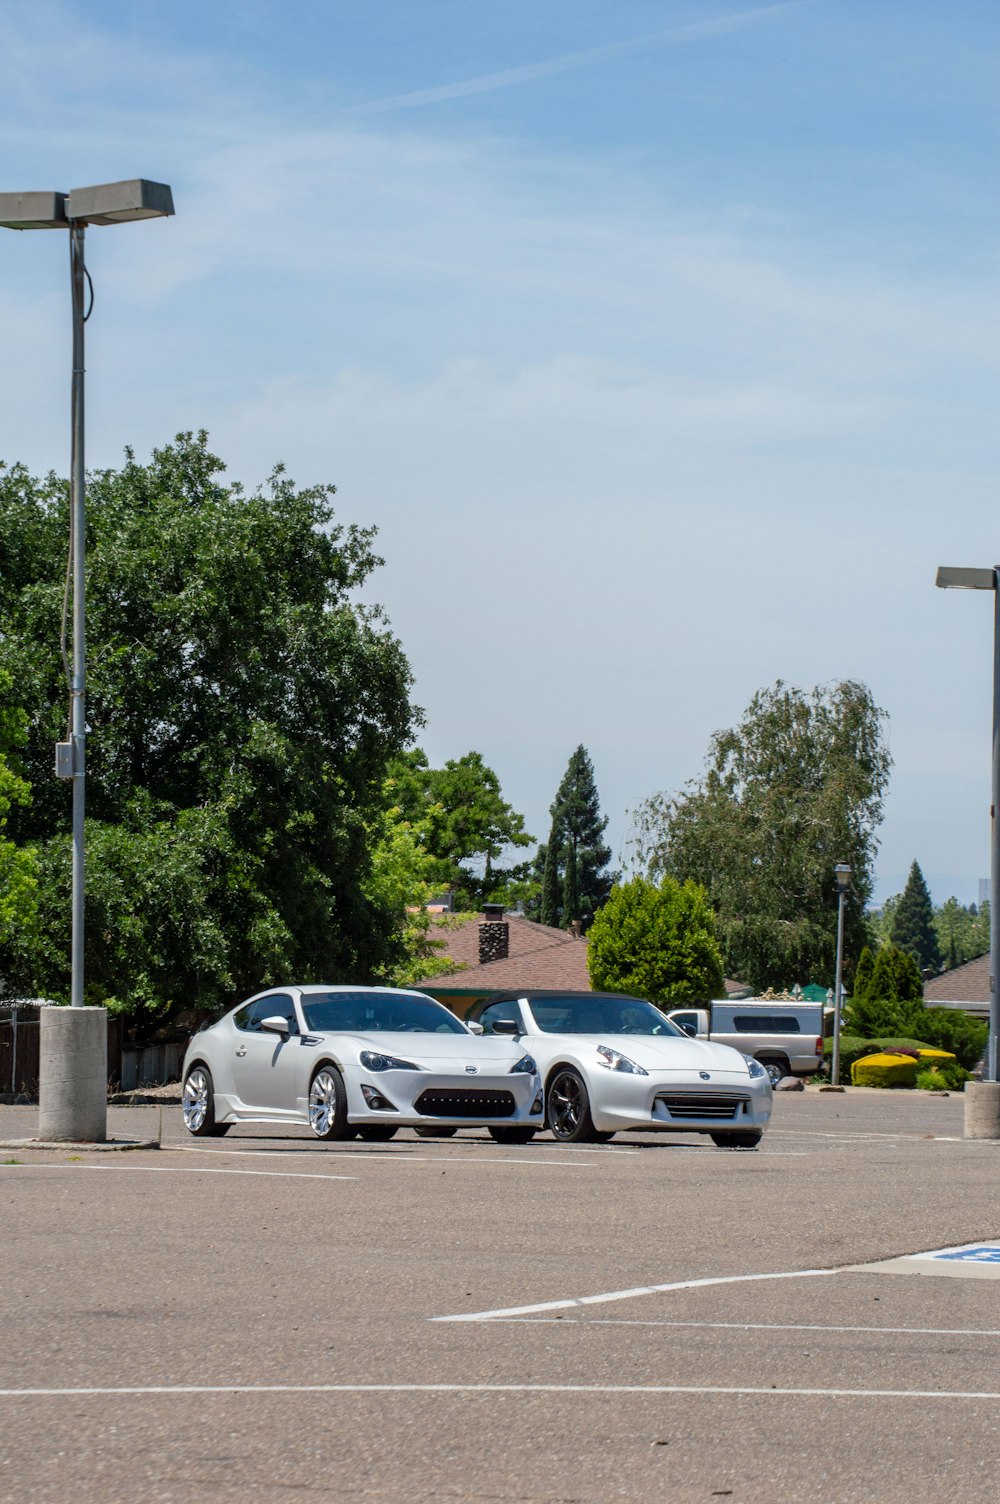 駐車場に駐車した2台の白いスポーツカー